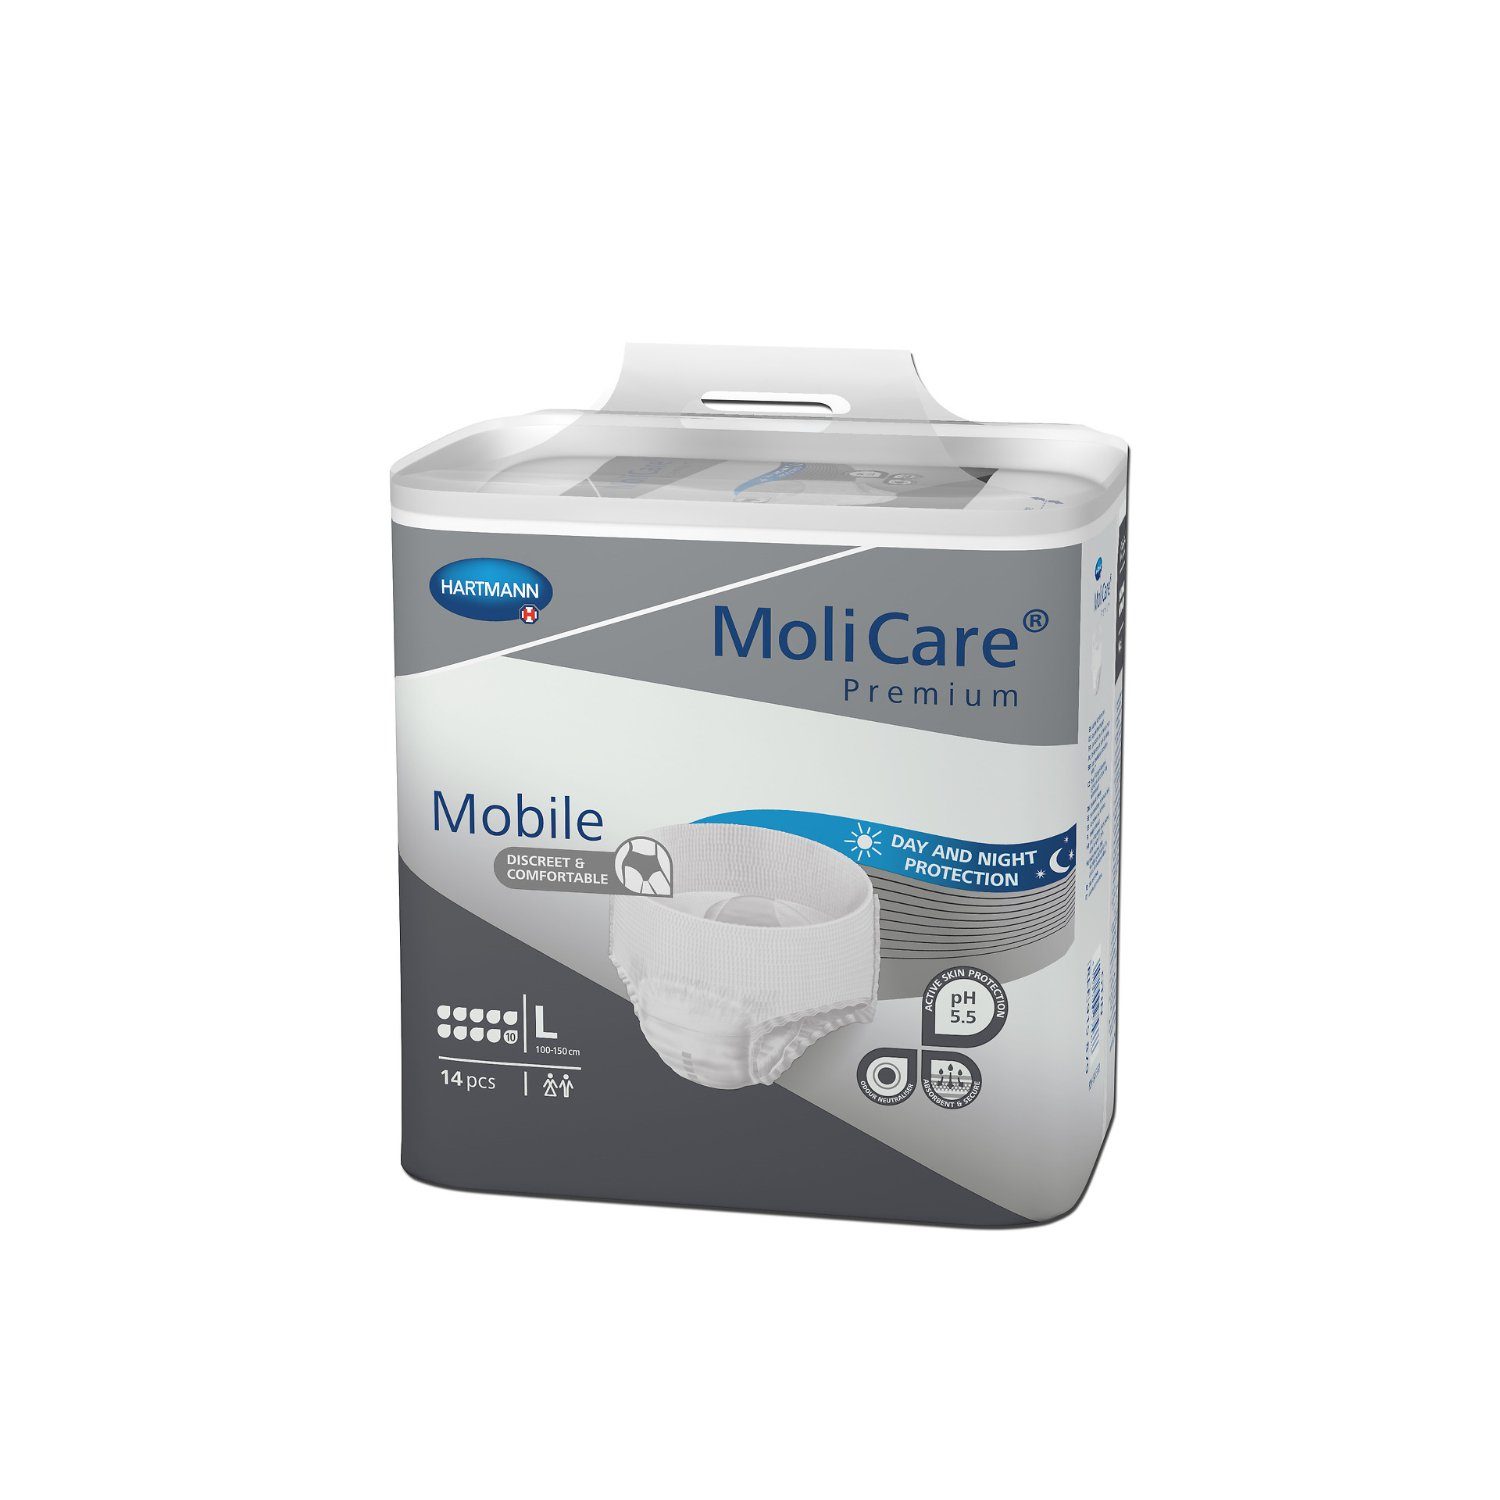 Molicare Inkontinenzslip MoliCare® Premium Mobile 10 Tropfen Größe L (14-St) für diskreten Schutz